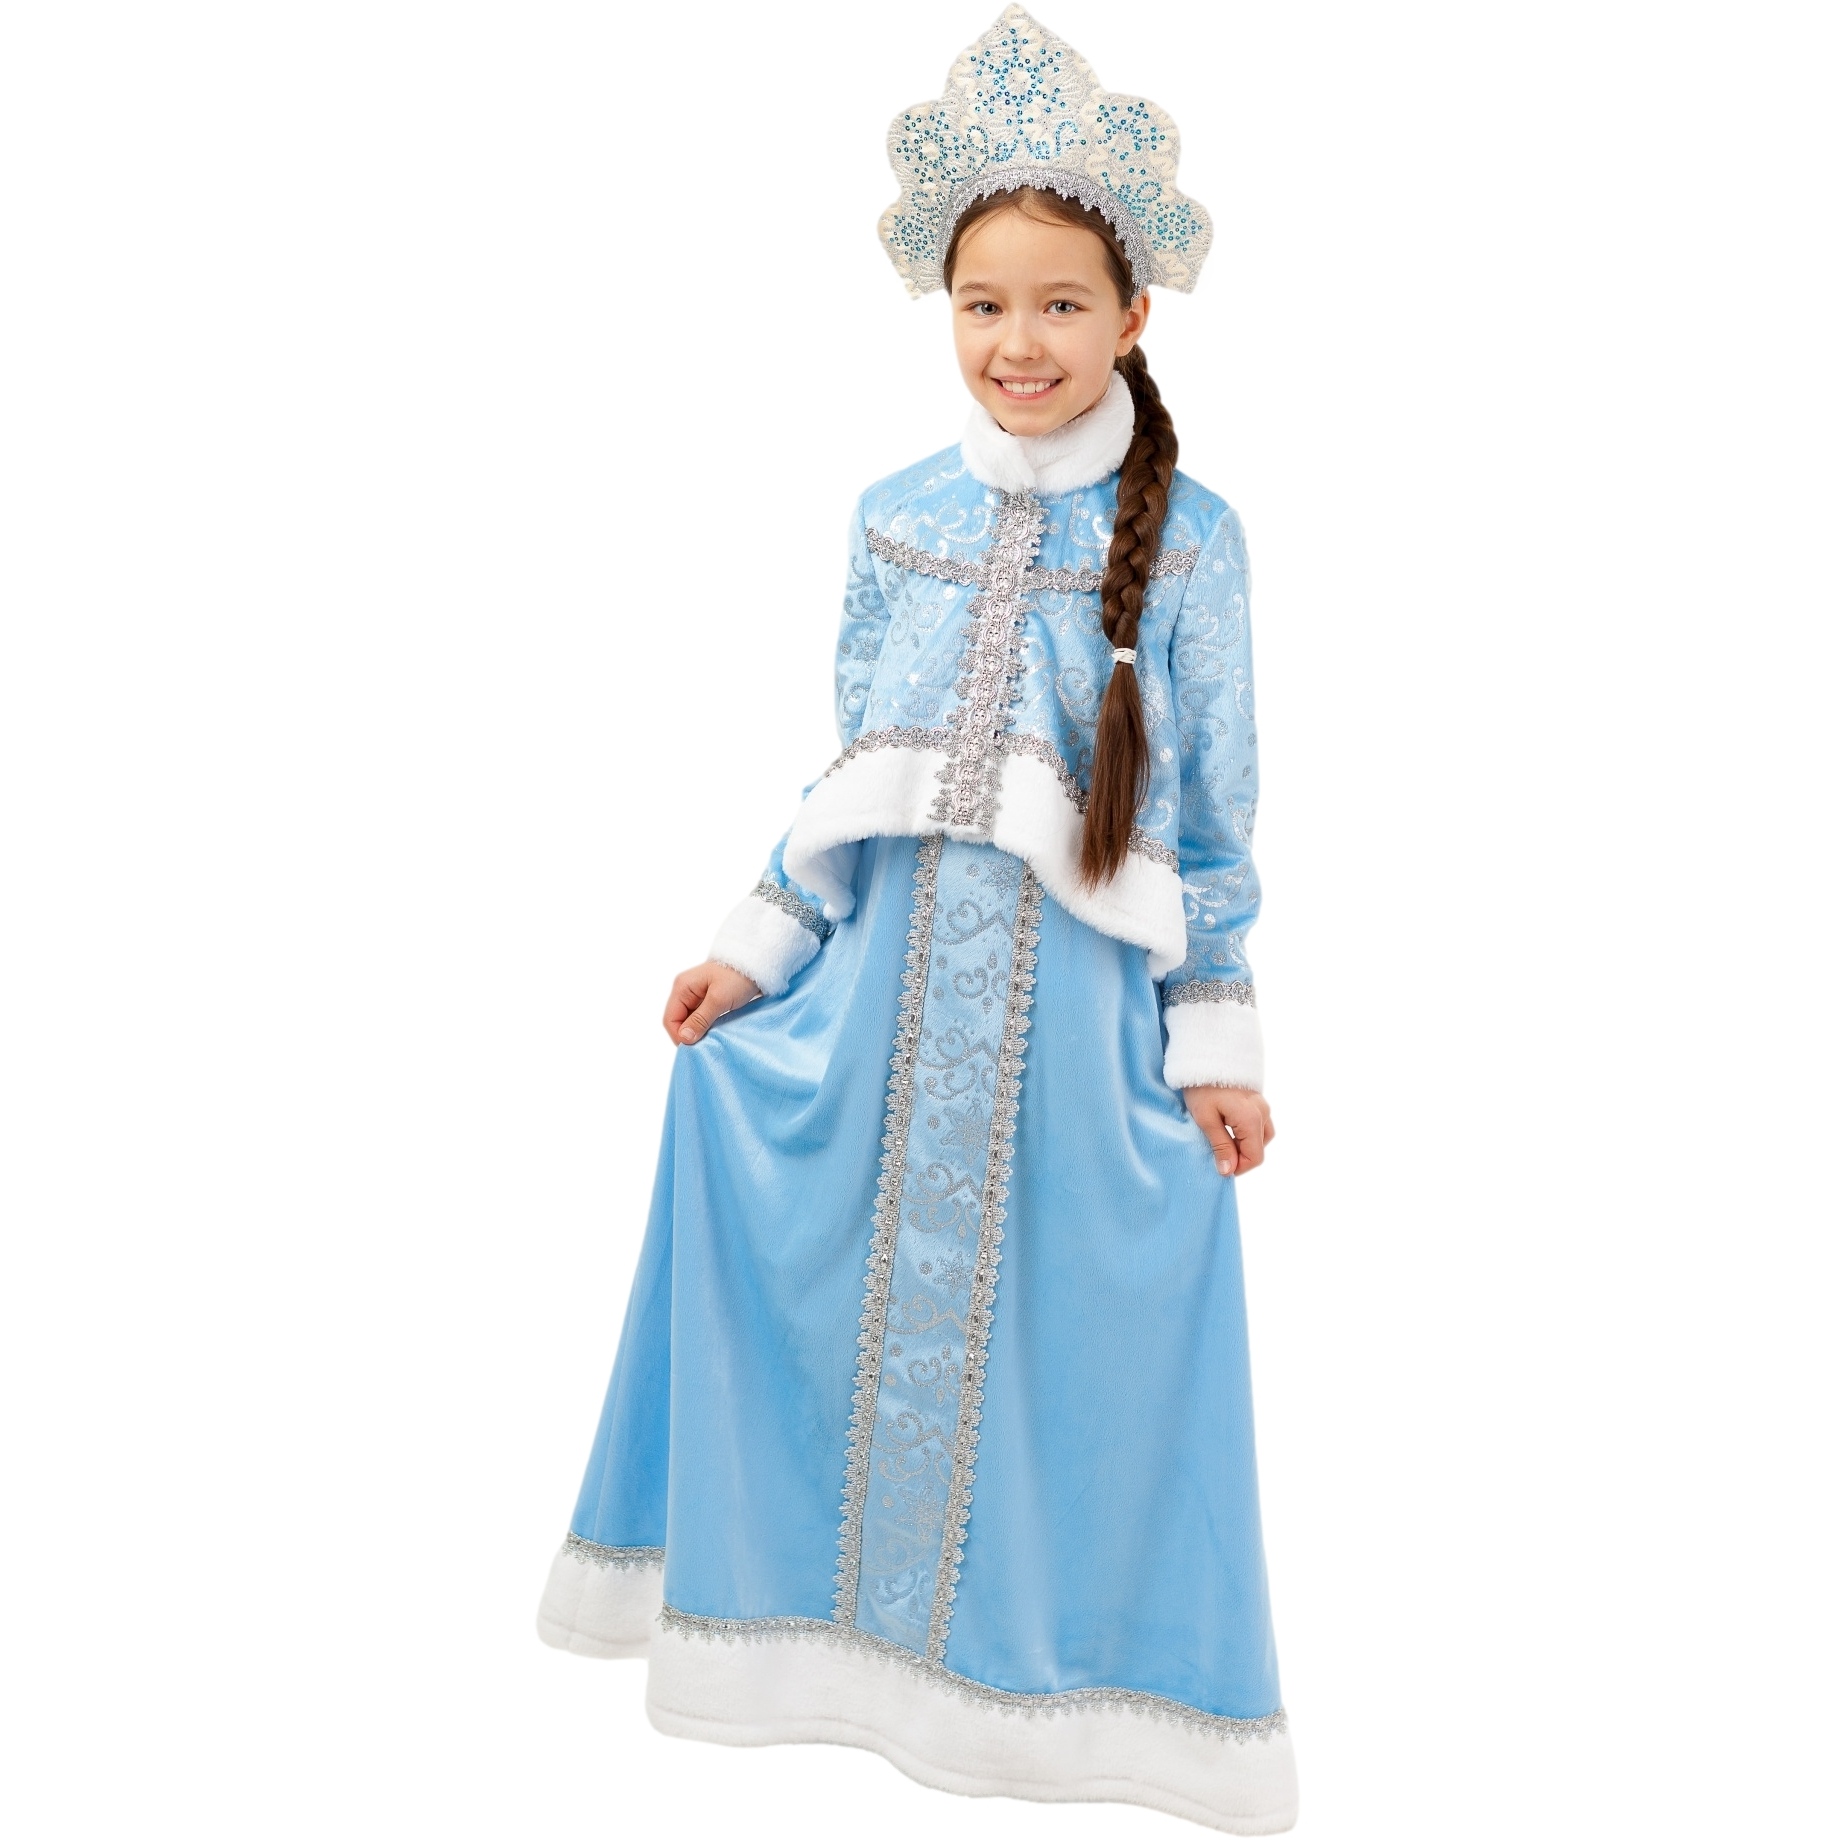 Карнавальный костюм "Снегурочка Танюшка" (жакет, сарафан, кокошник) размер 140-72